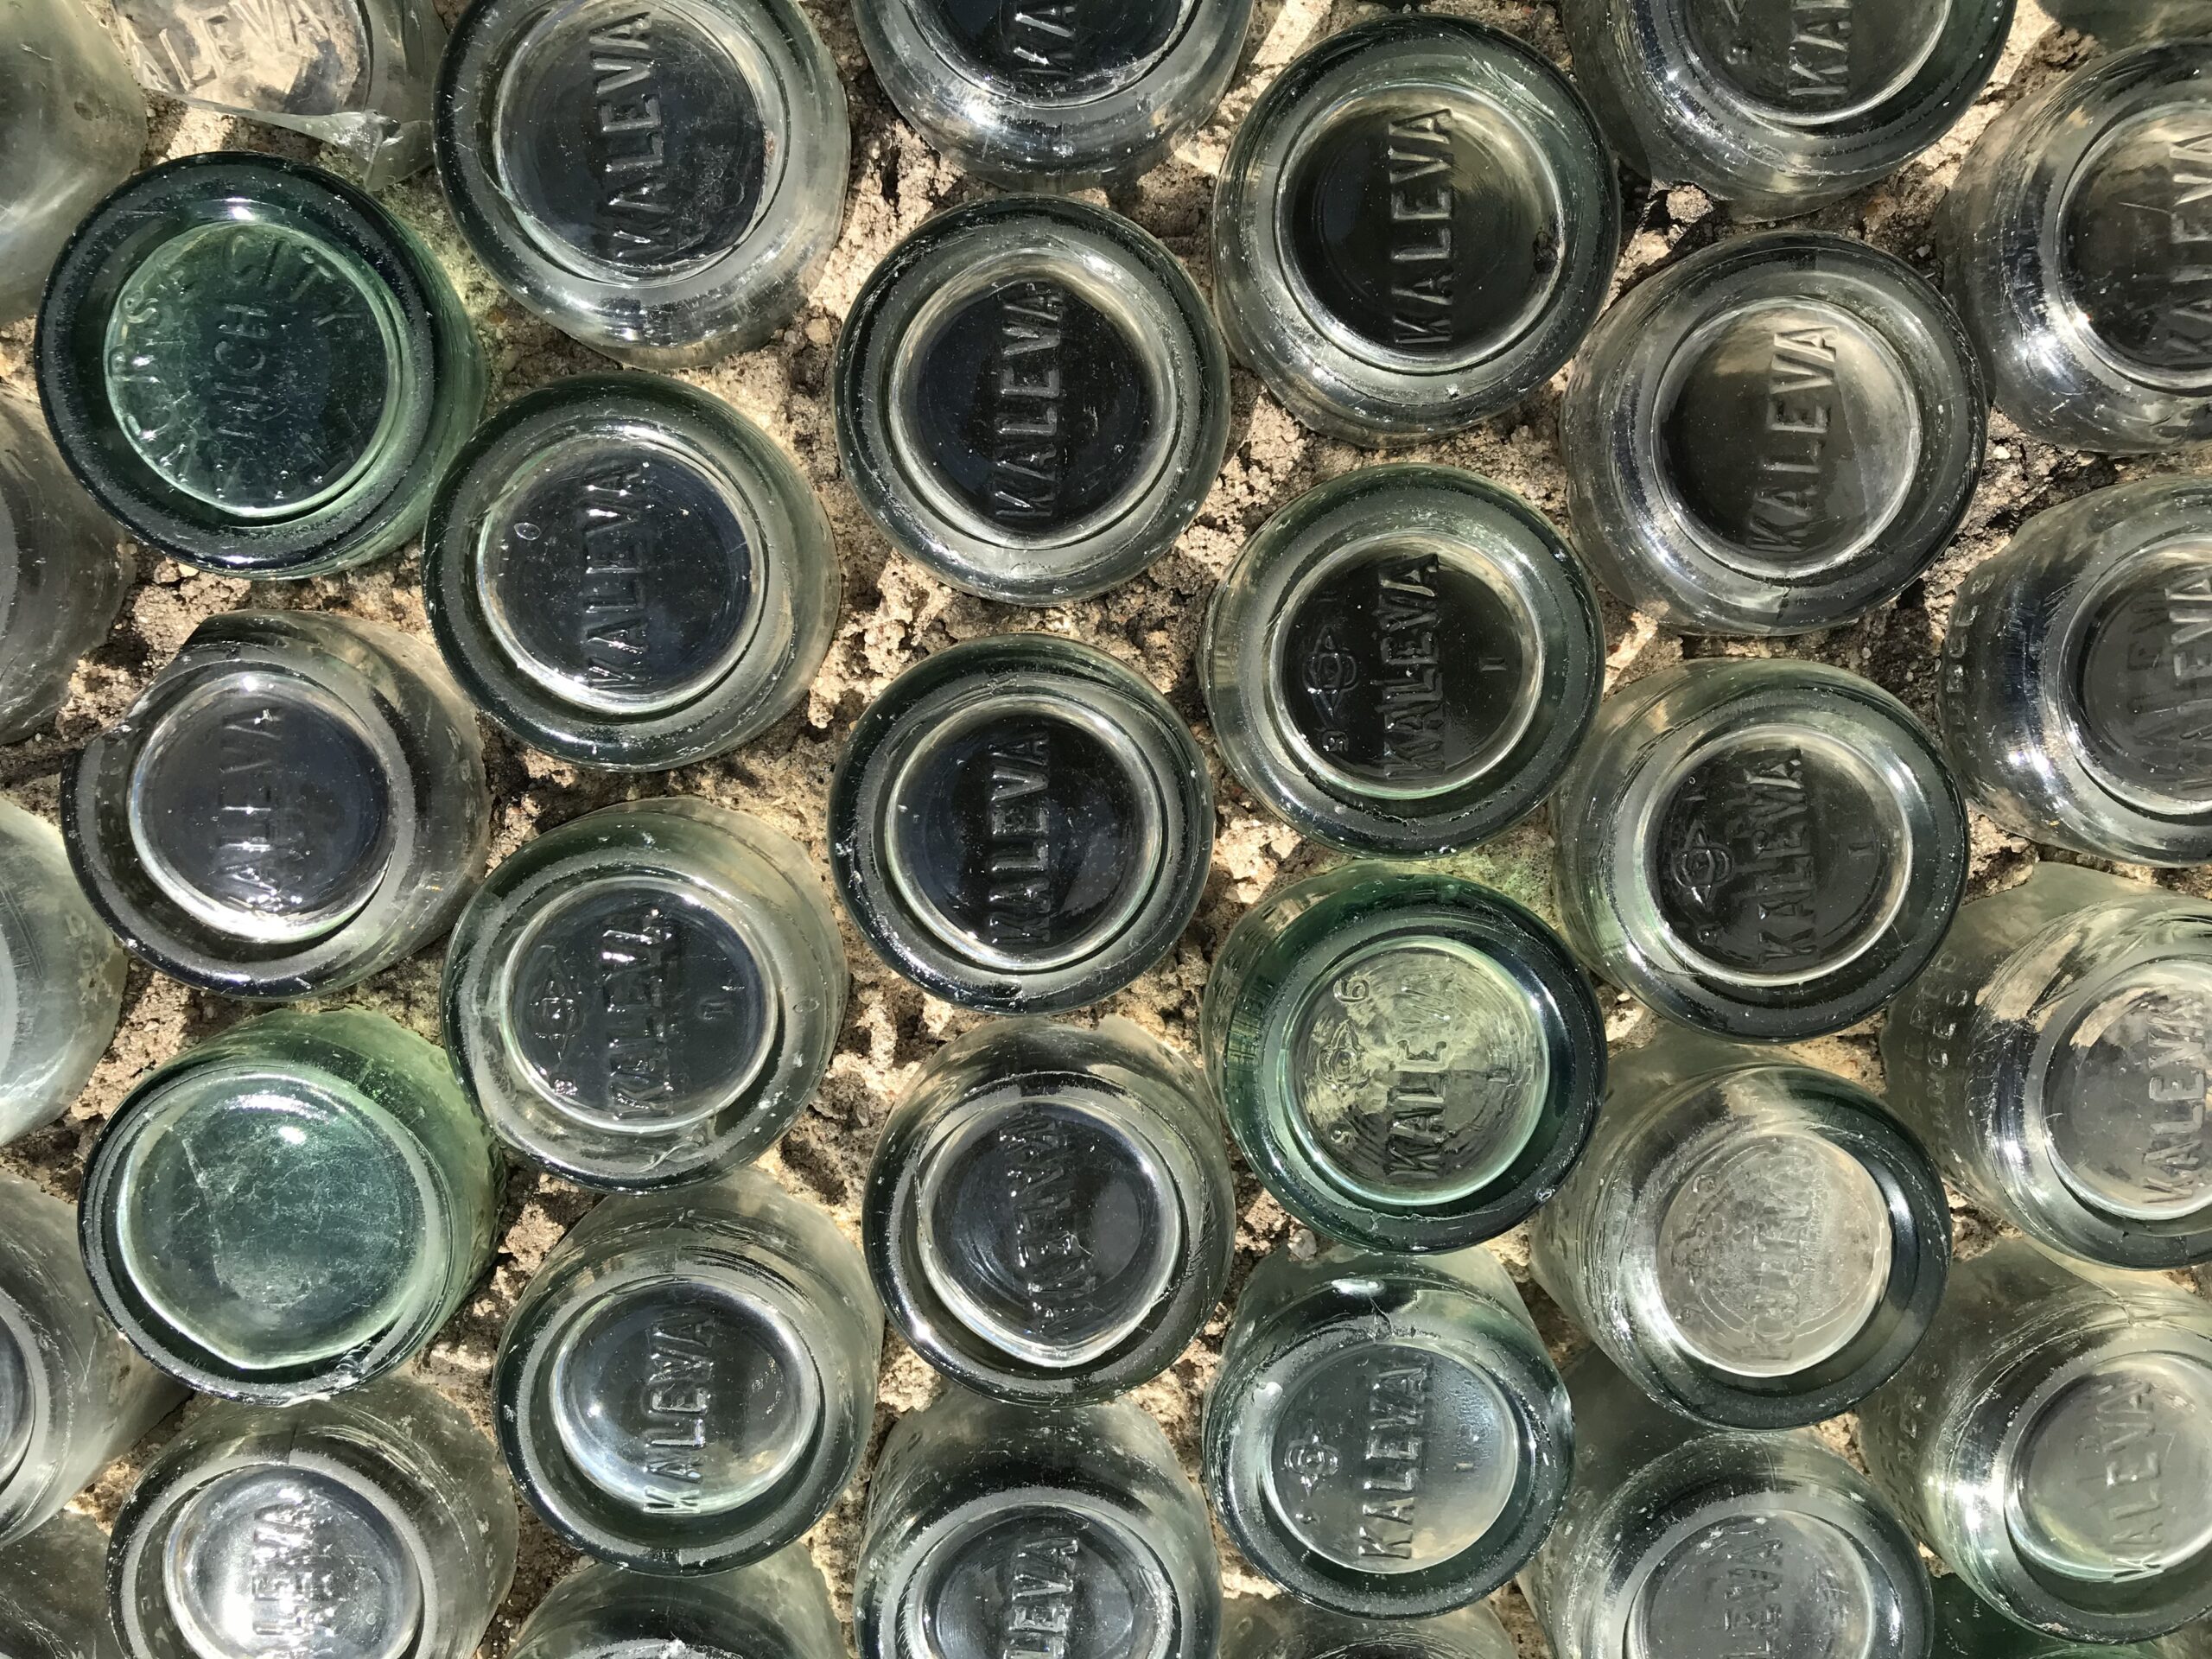 Kaleva bottle house close up